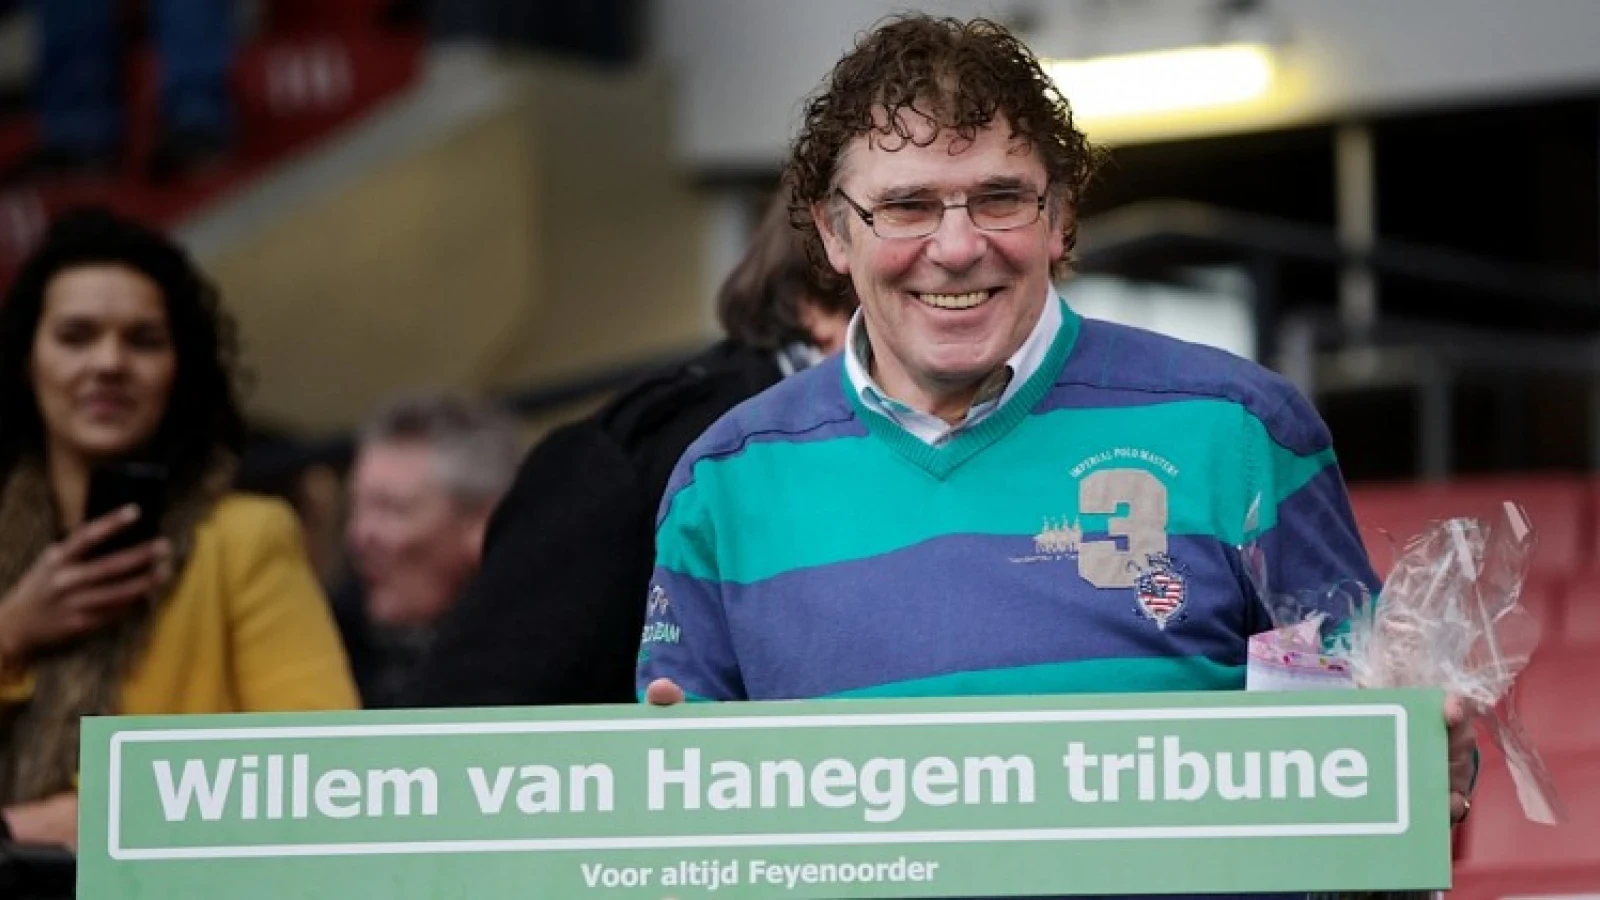 Van Hanegem fileert De Jong: 'Ik keek er met plaatsvervangende schaamte naar'